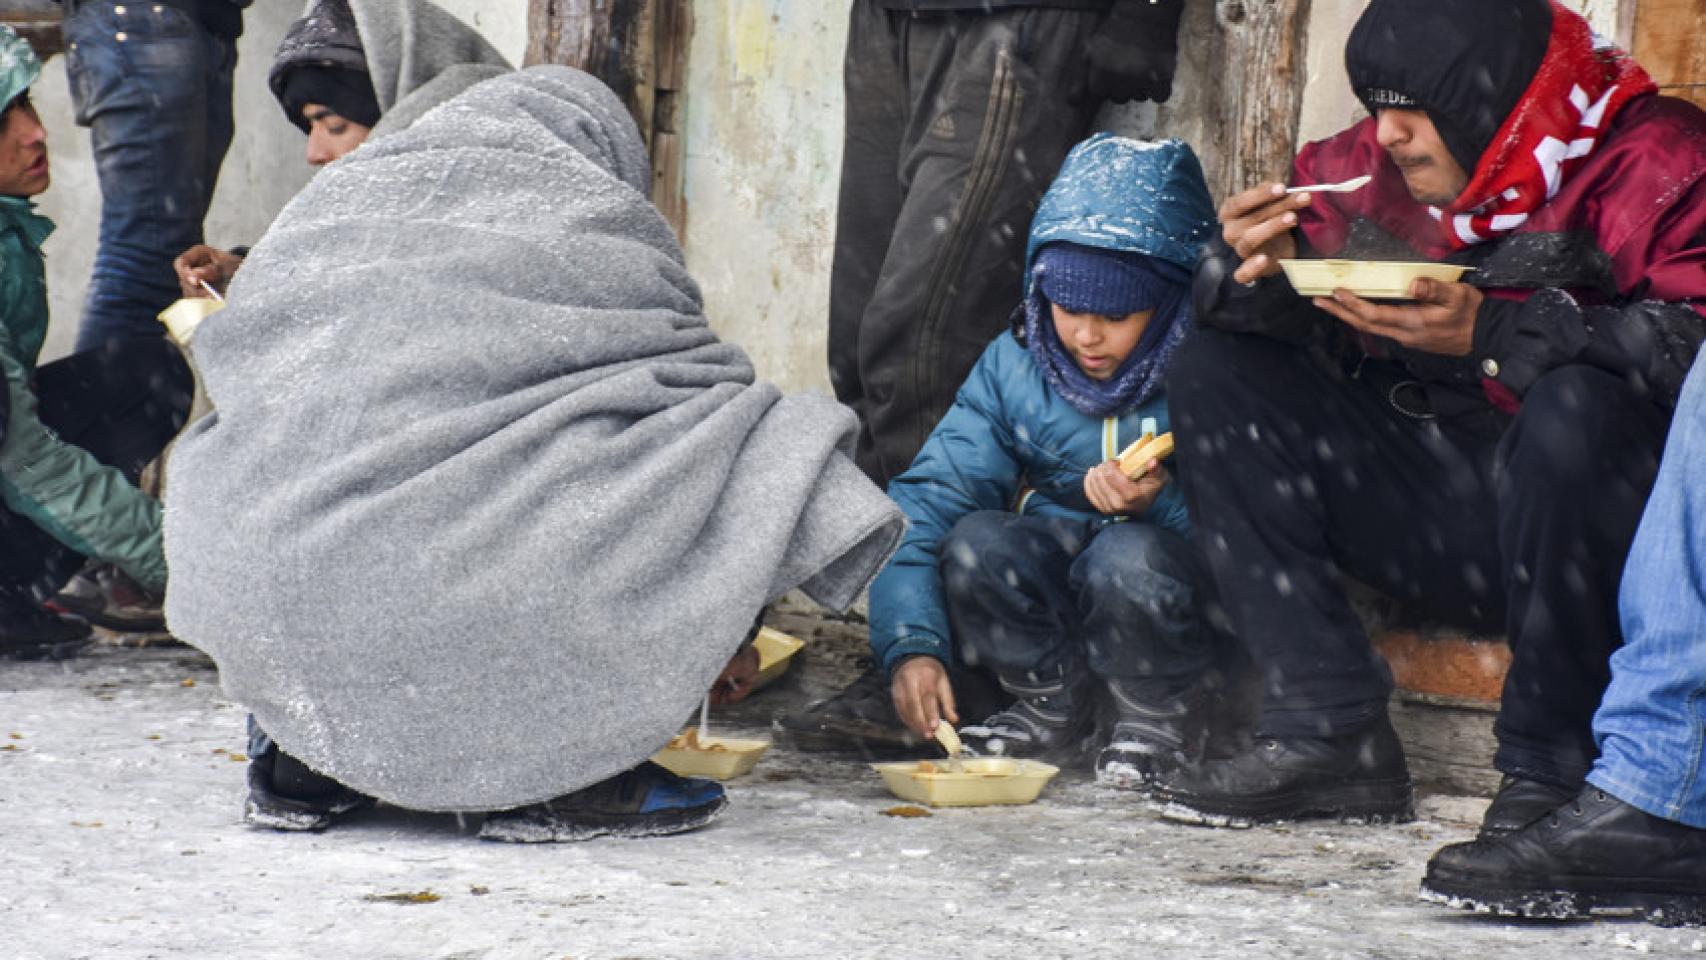 En Serbia hay cientos de niños no acompañados en refugios a veces improvisados, según Save The Children.